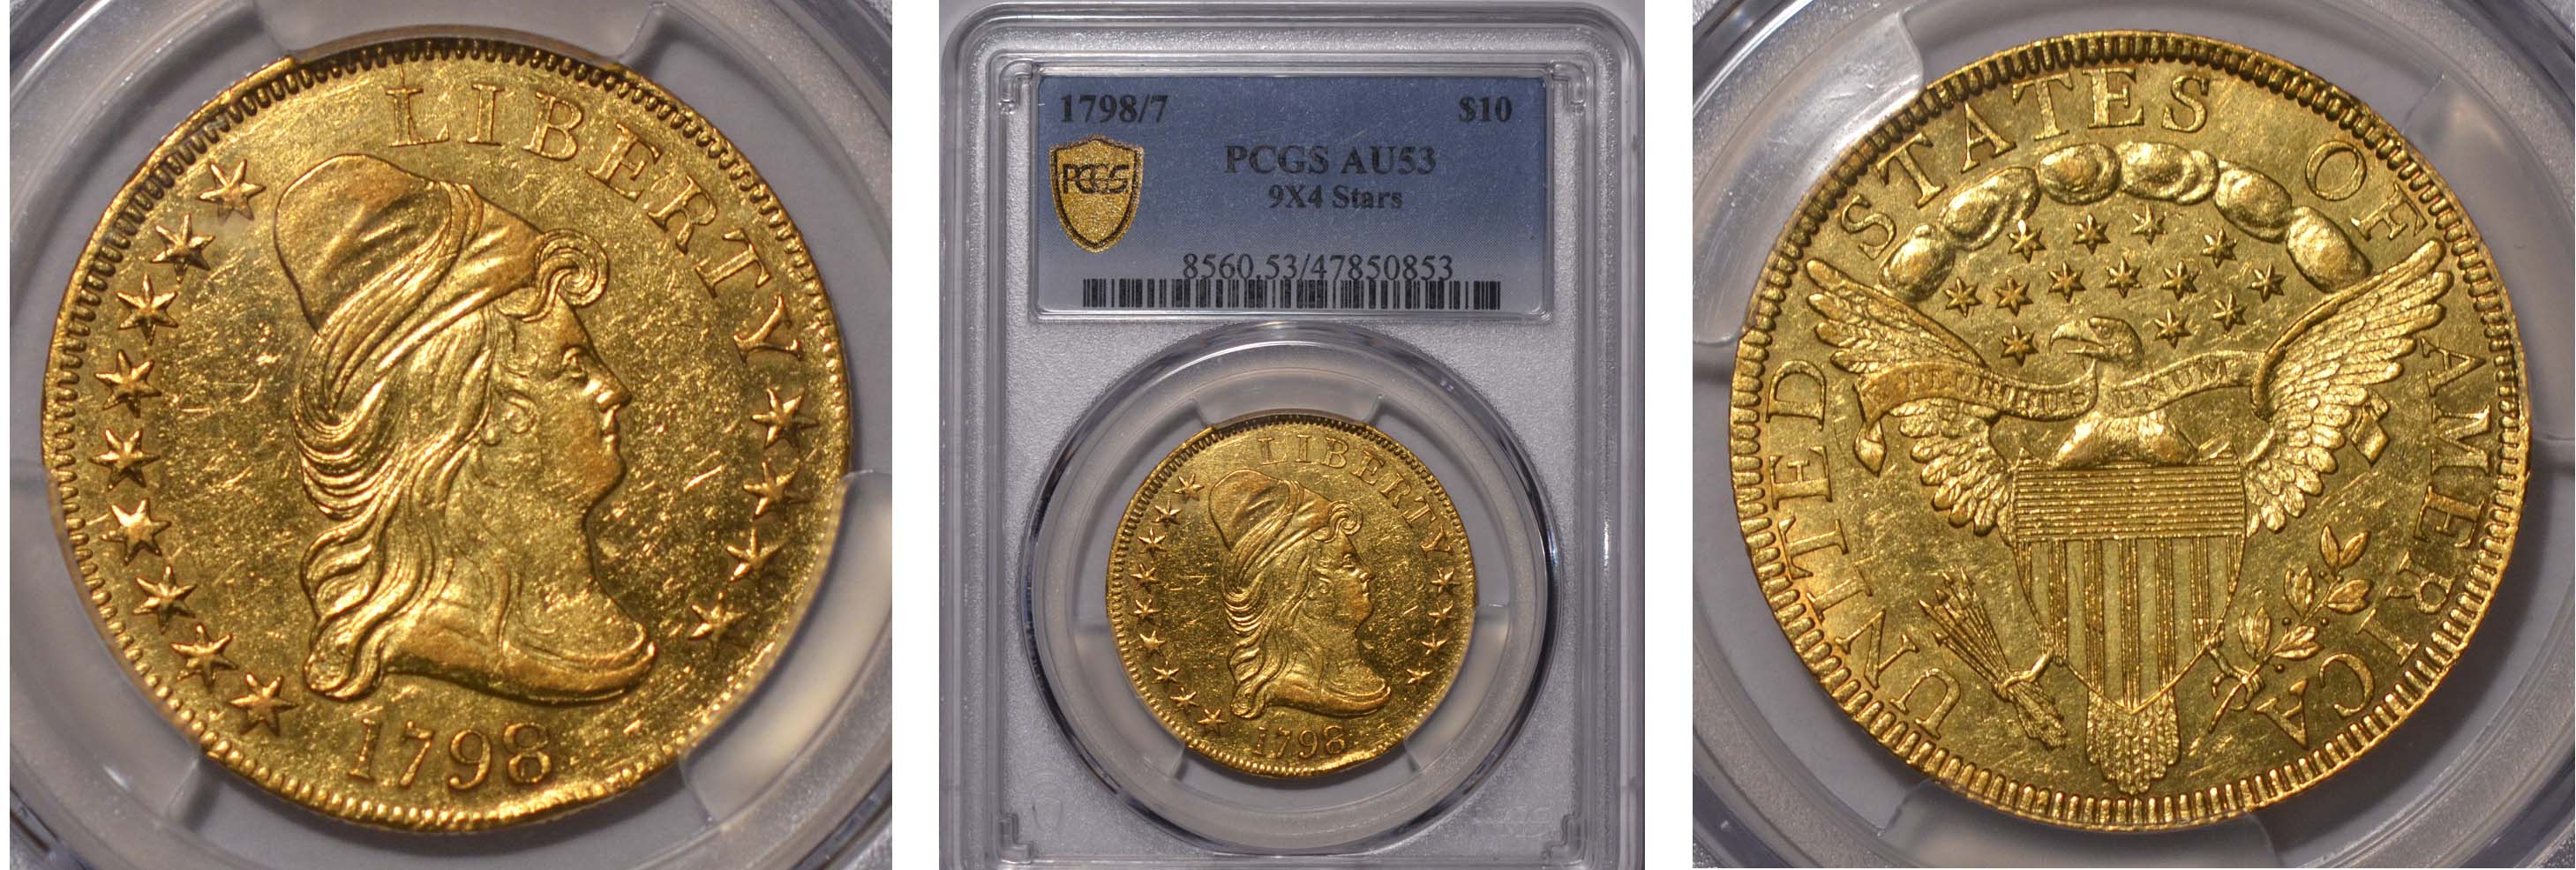 1798/7 Gold Eagle $10 9x4 Stars PCGS AU53